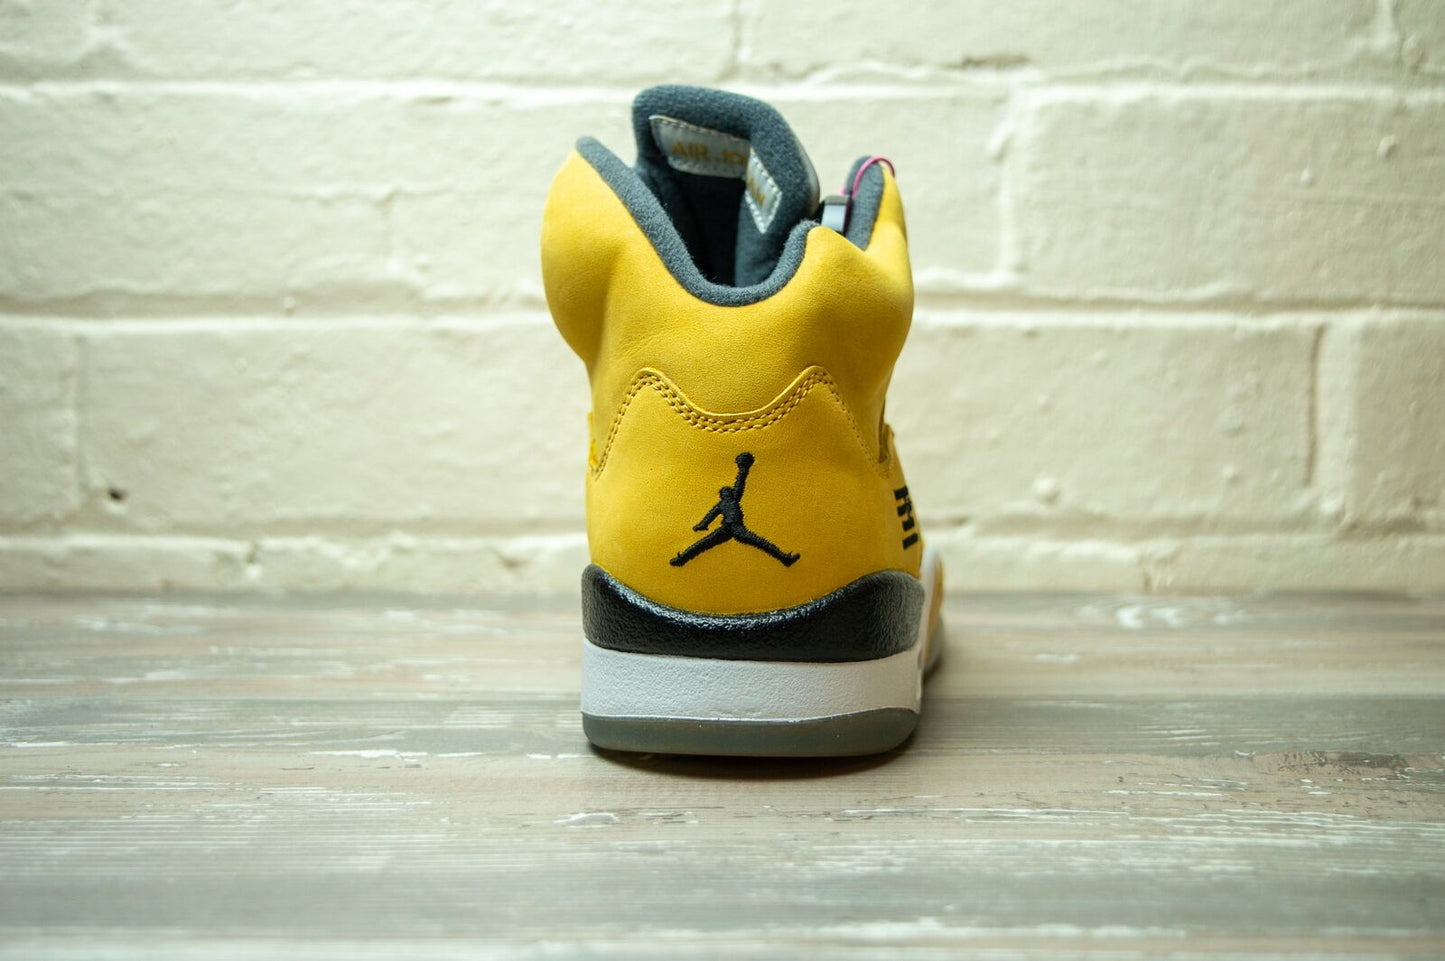 Nike Air Jordan 5 Retro T23 Tokyo 454783 701 -Nike Air Jordan 5 Retro T23 Tokyo 454783 701 -